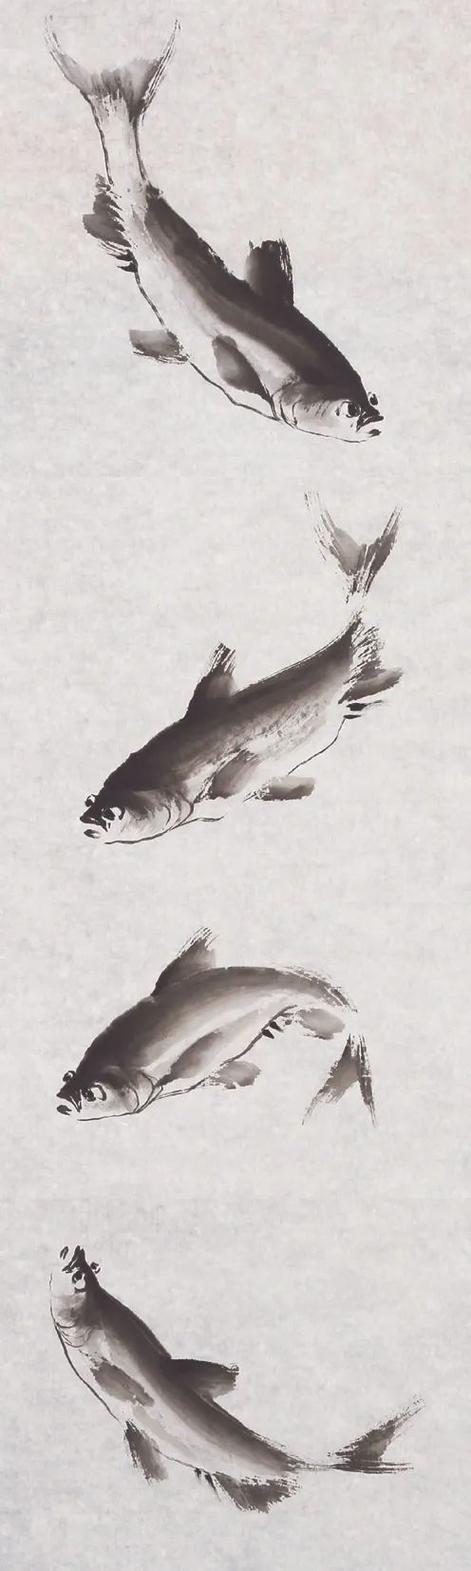 头条专栏画鲢鱼的方法:以含水的毛笔蘸墨调试后,卧锋落纸向右拖出,画